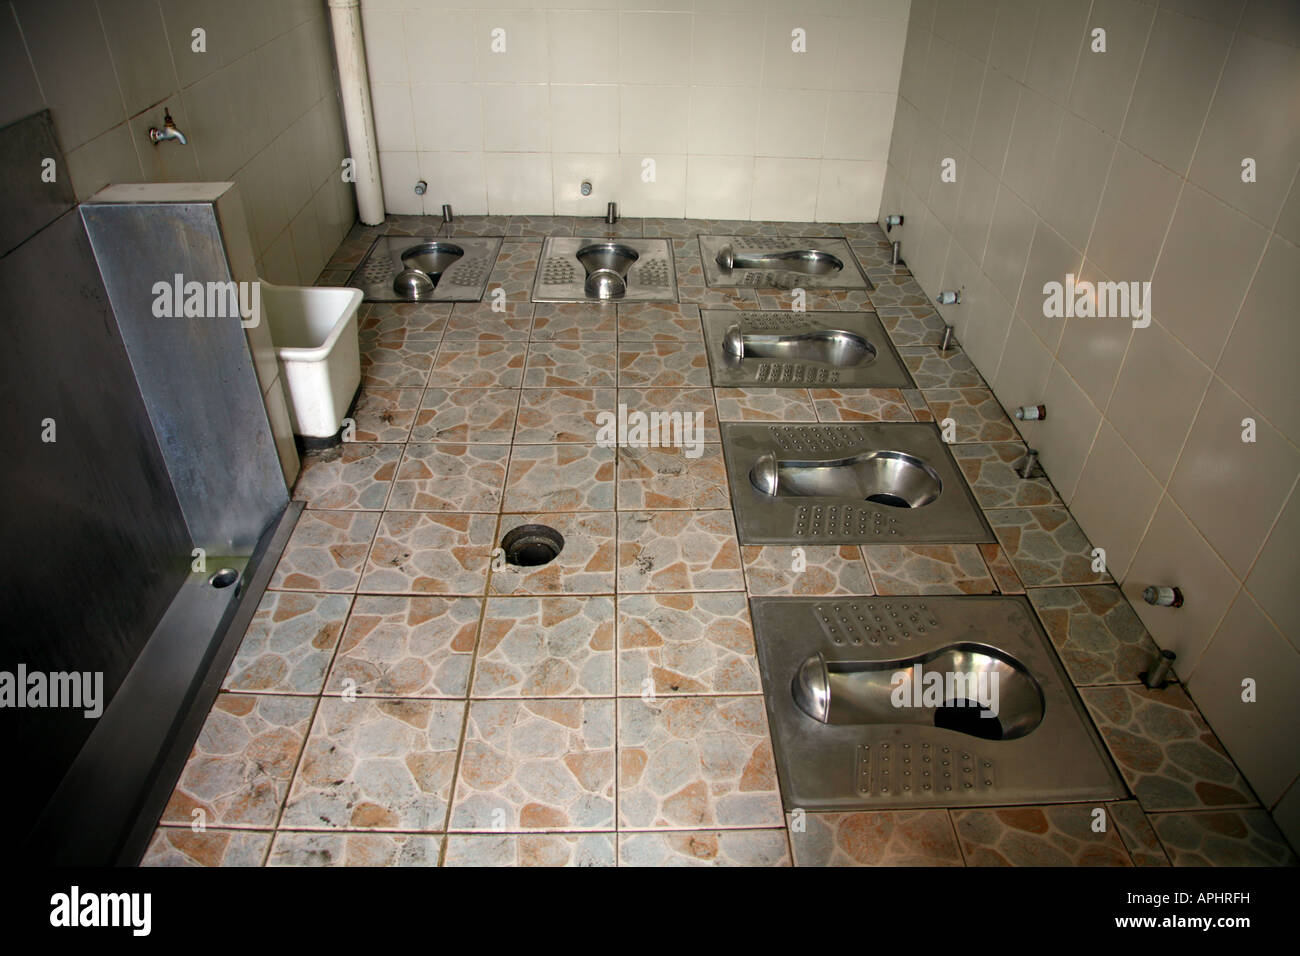 China toilet public -Fotos und -Bildmaterial in hoher Auflösung - Seite 2 -  Alamy